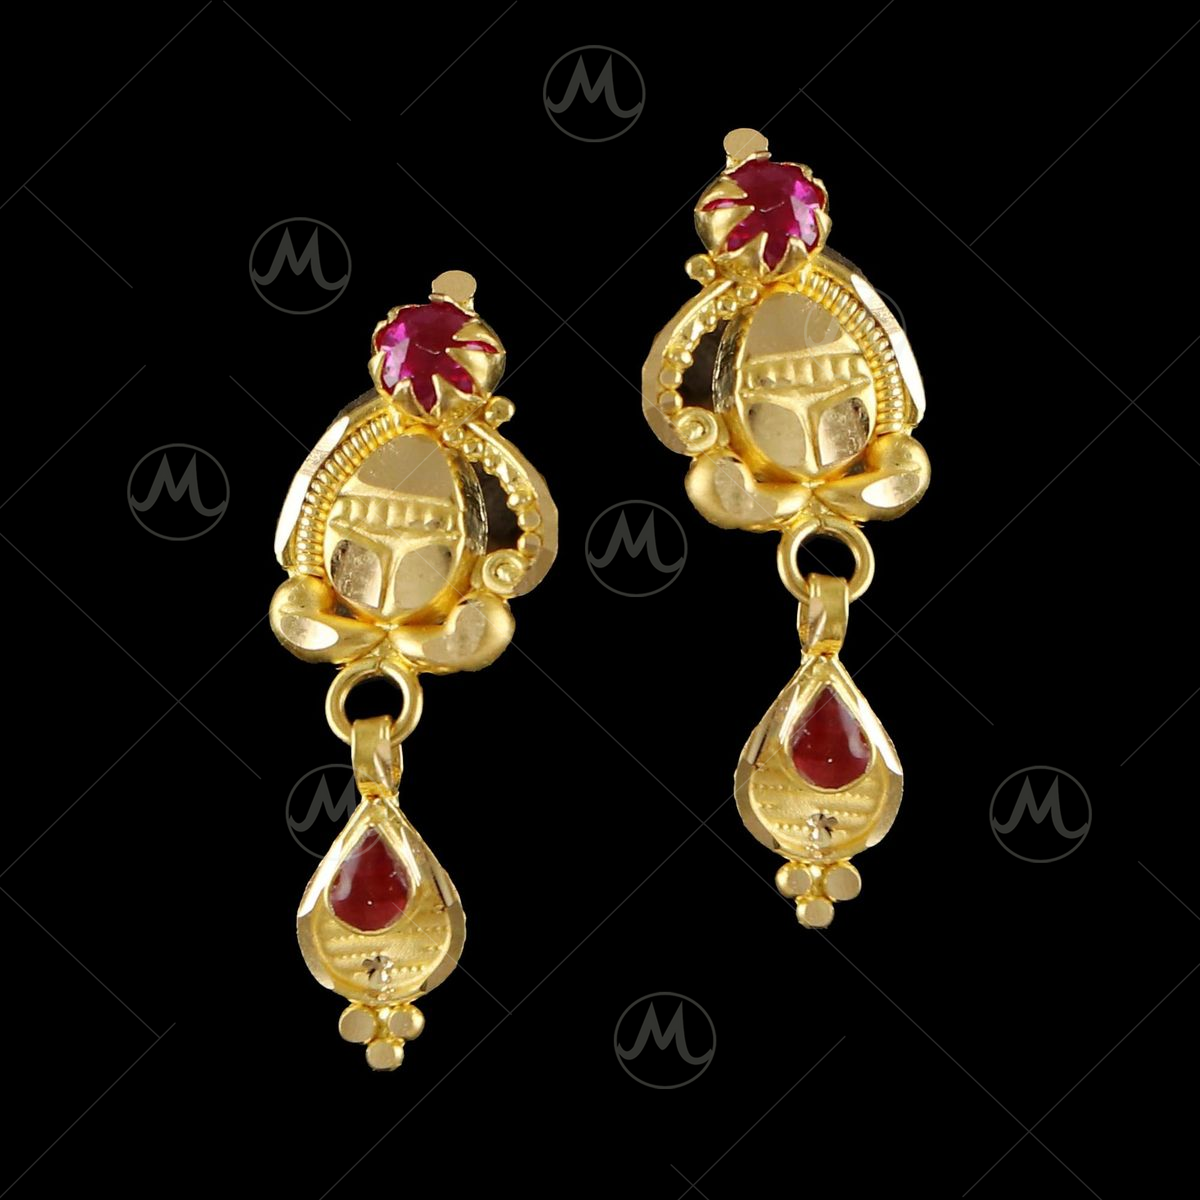 18 karat gold earring, weight 3.72 grams - زمرد ذهب و الماس